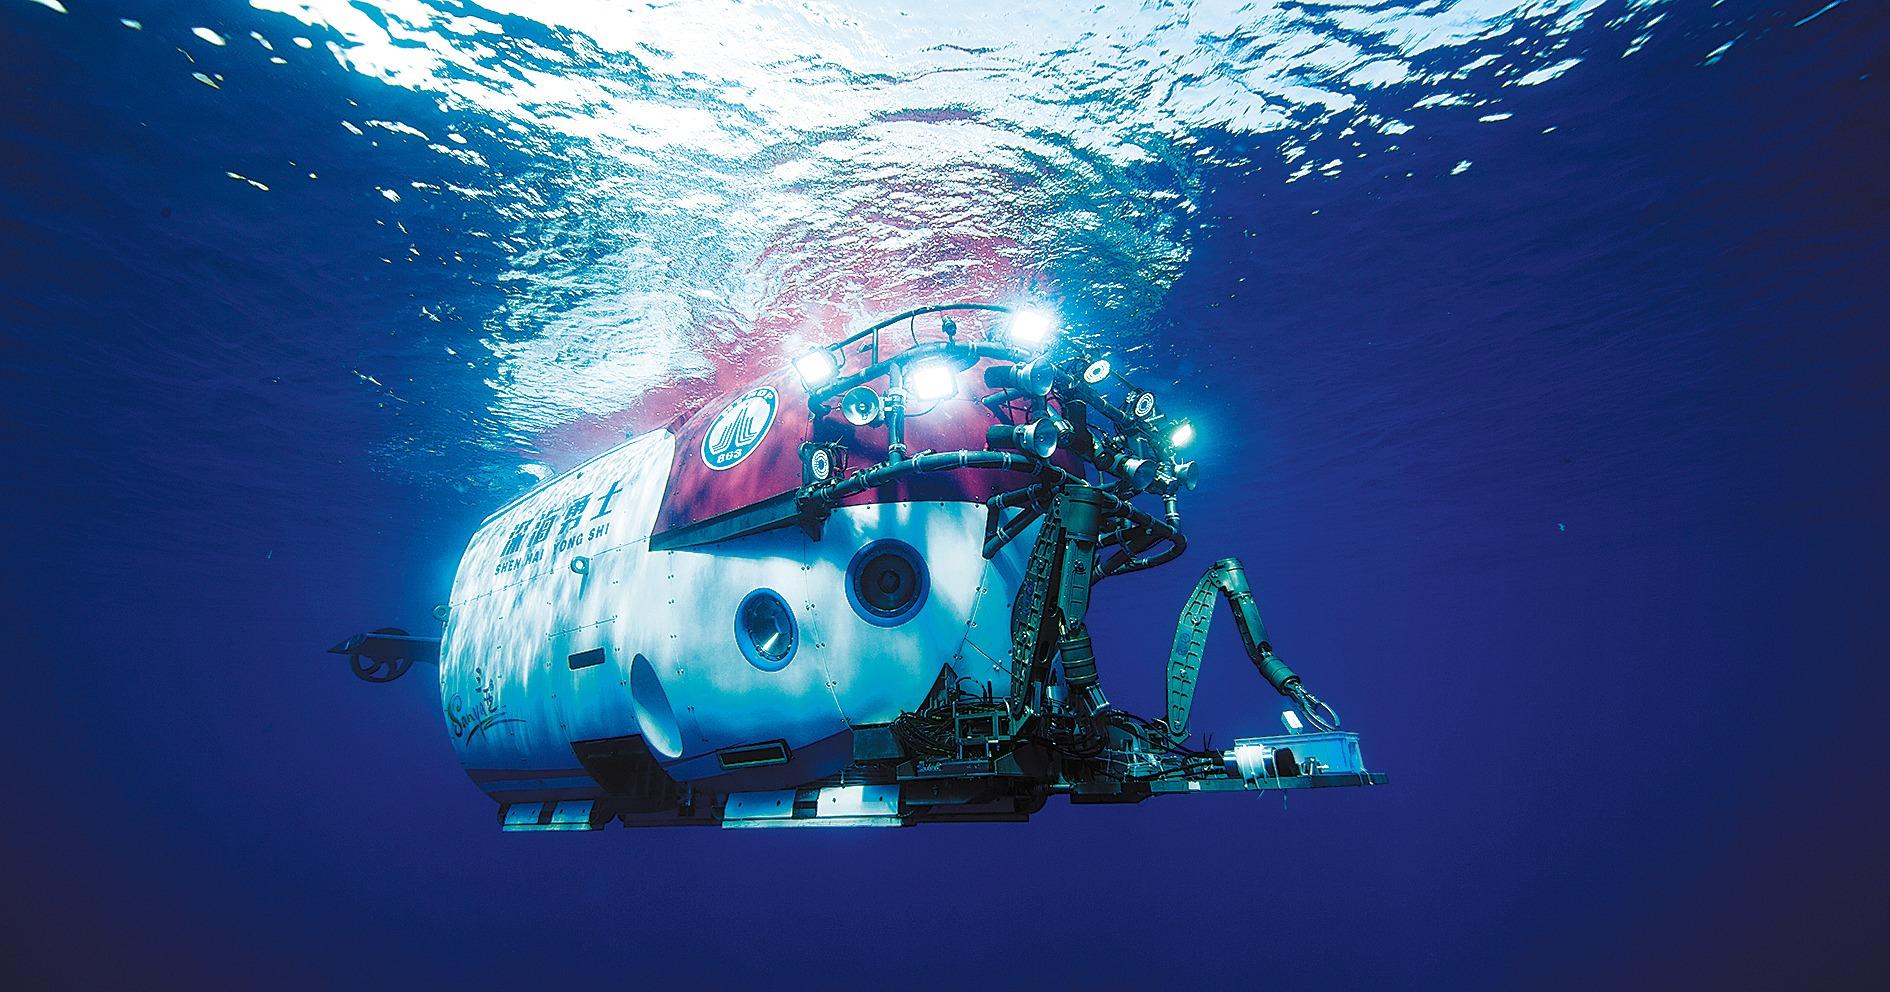 Dive into the Deep Dark Ocean in a High-Tech Submersible! 